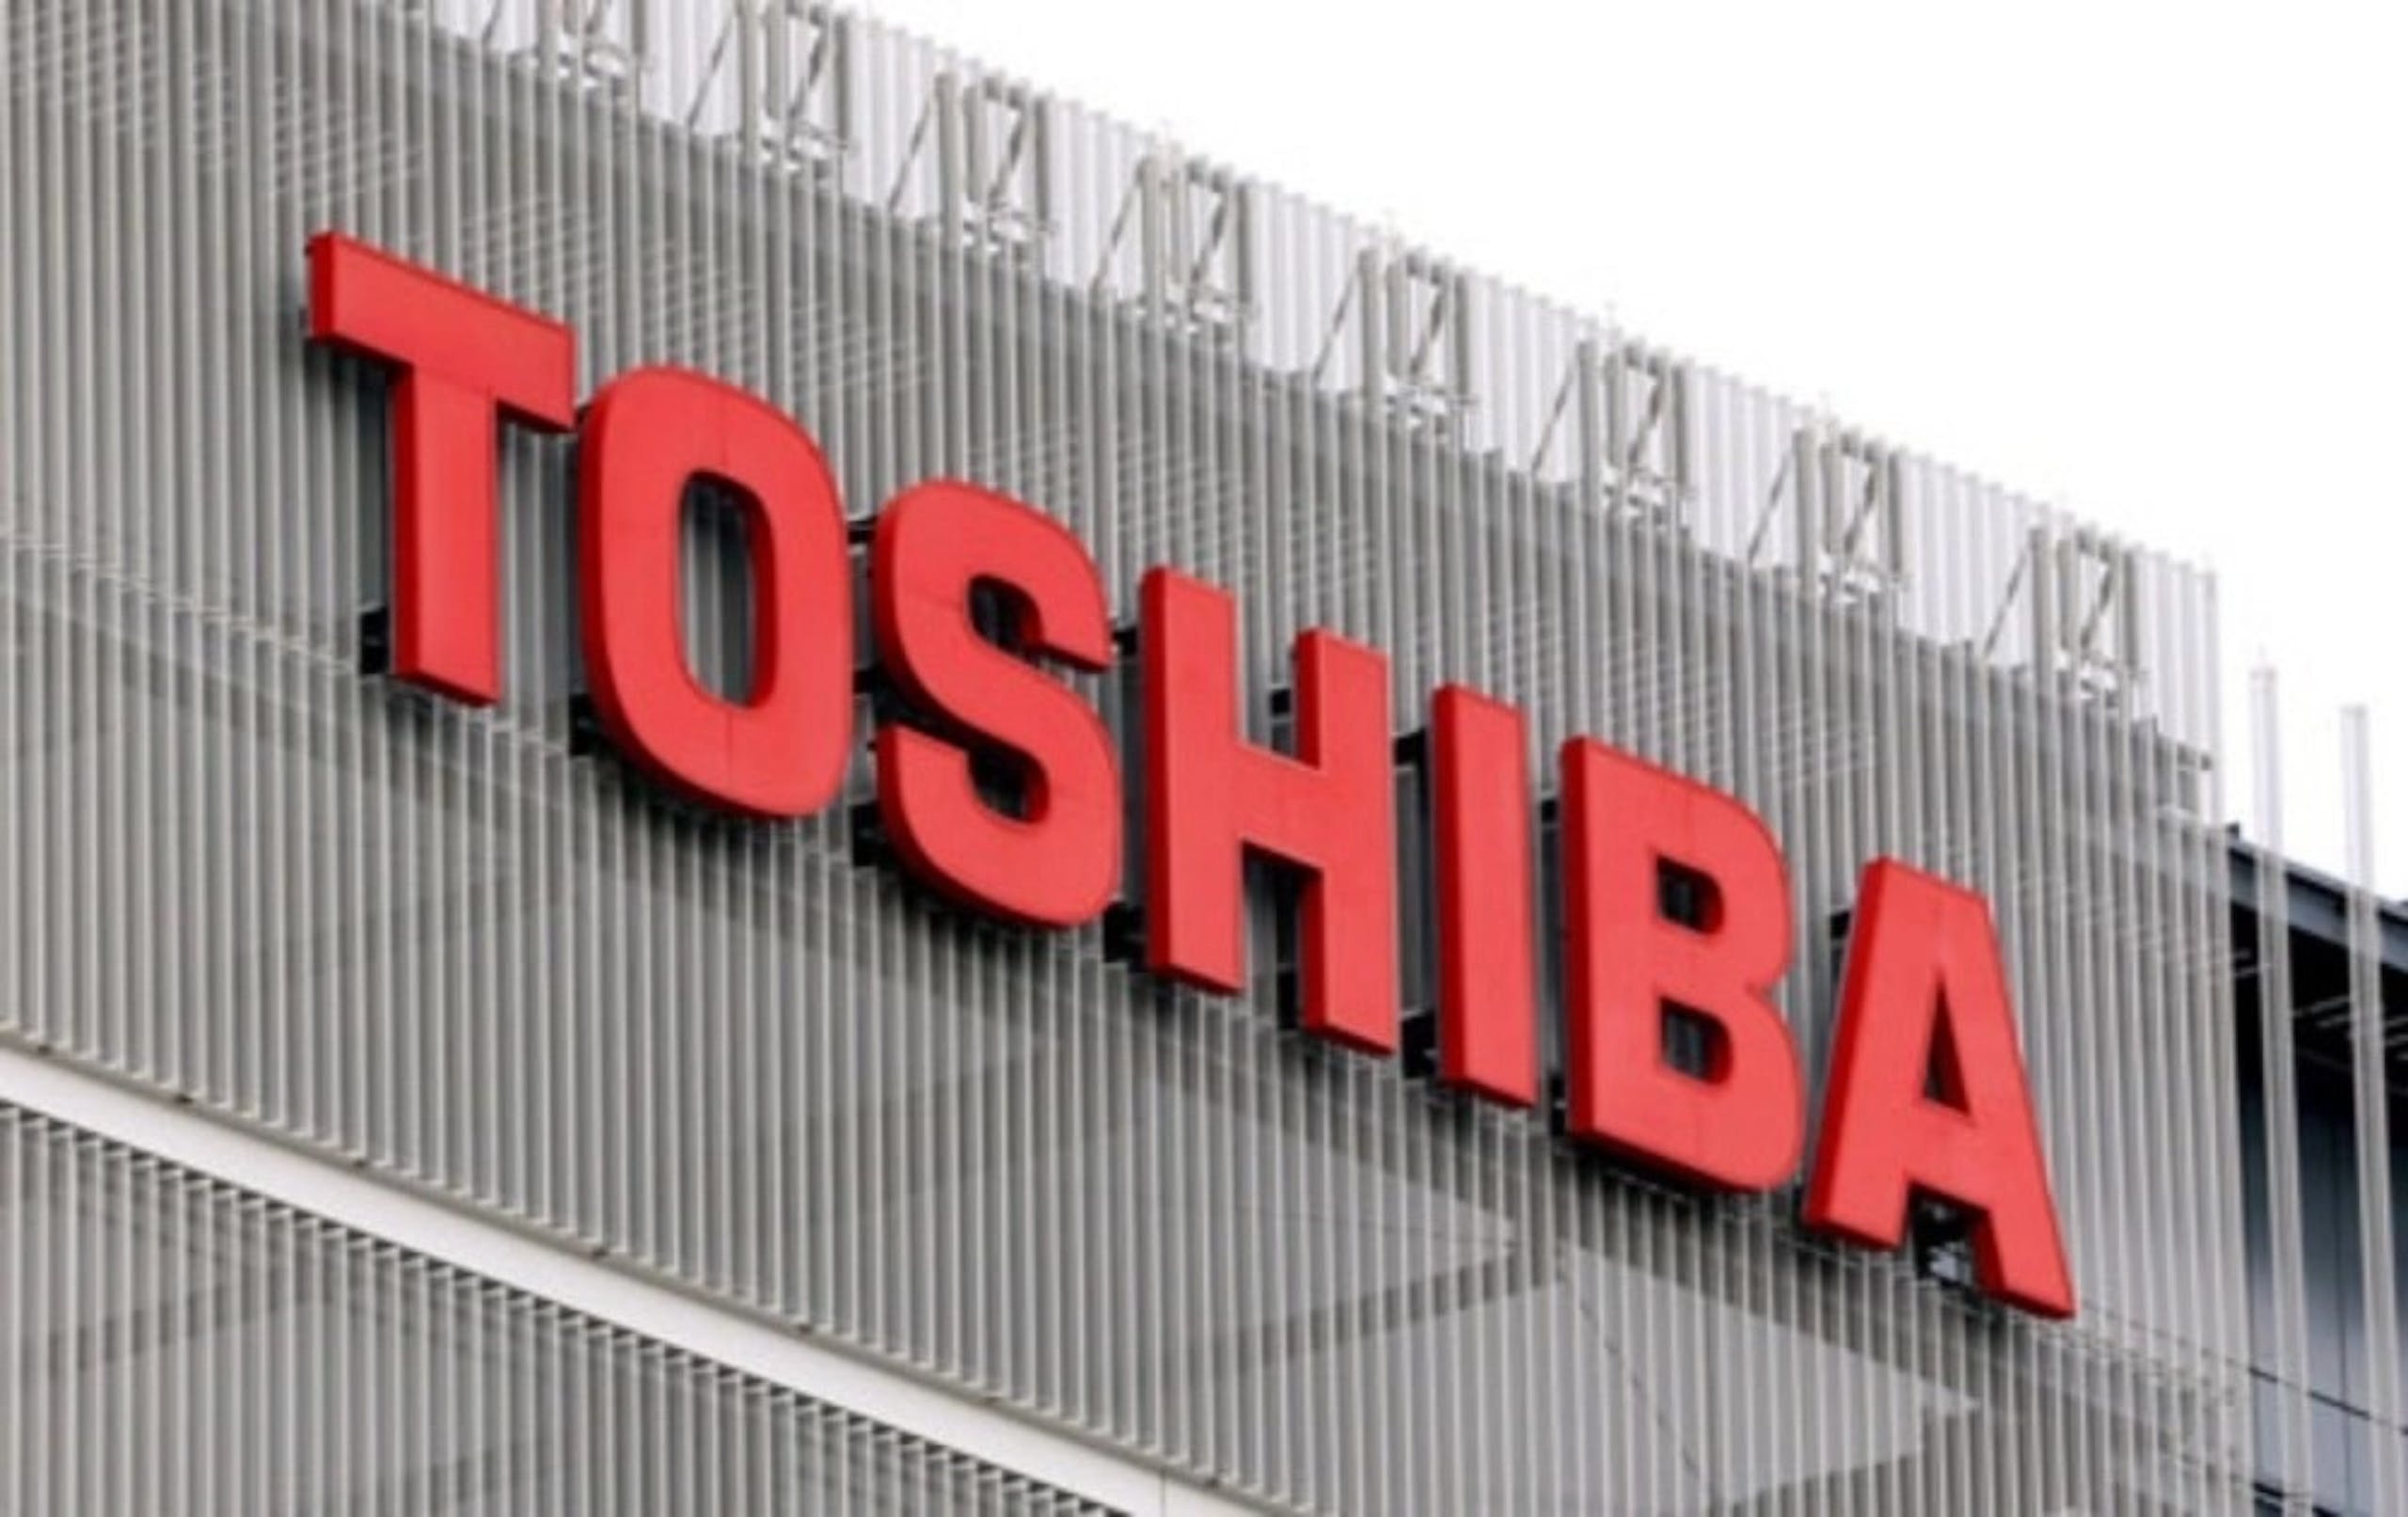 照片中提到了10 10 10 10 10 10 10、TOSHIBA，跟東芝有關，包含了東芝泰格株式會社